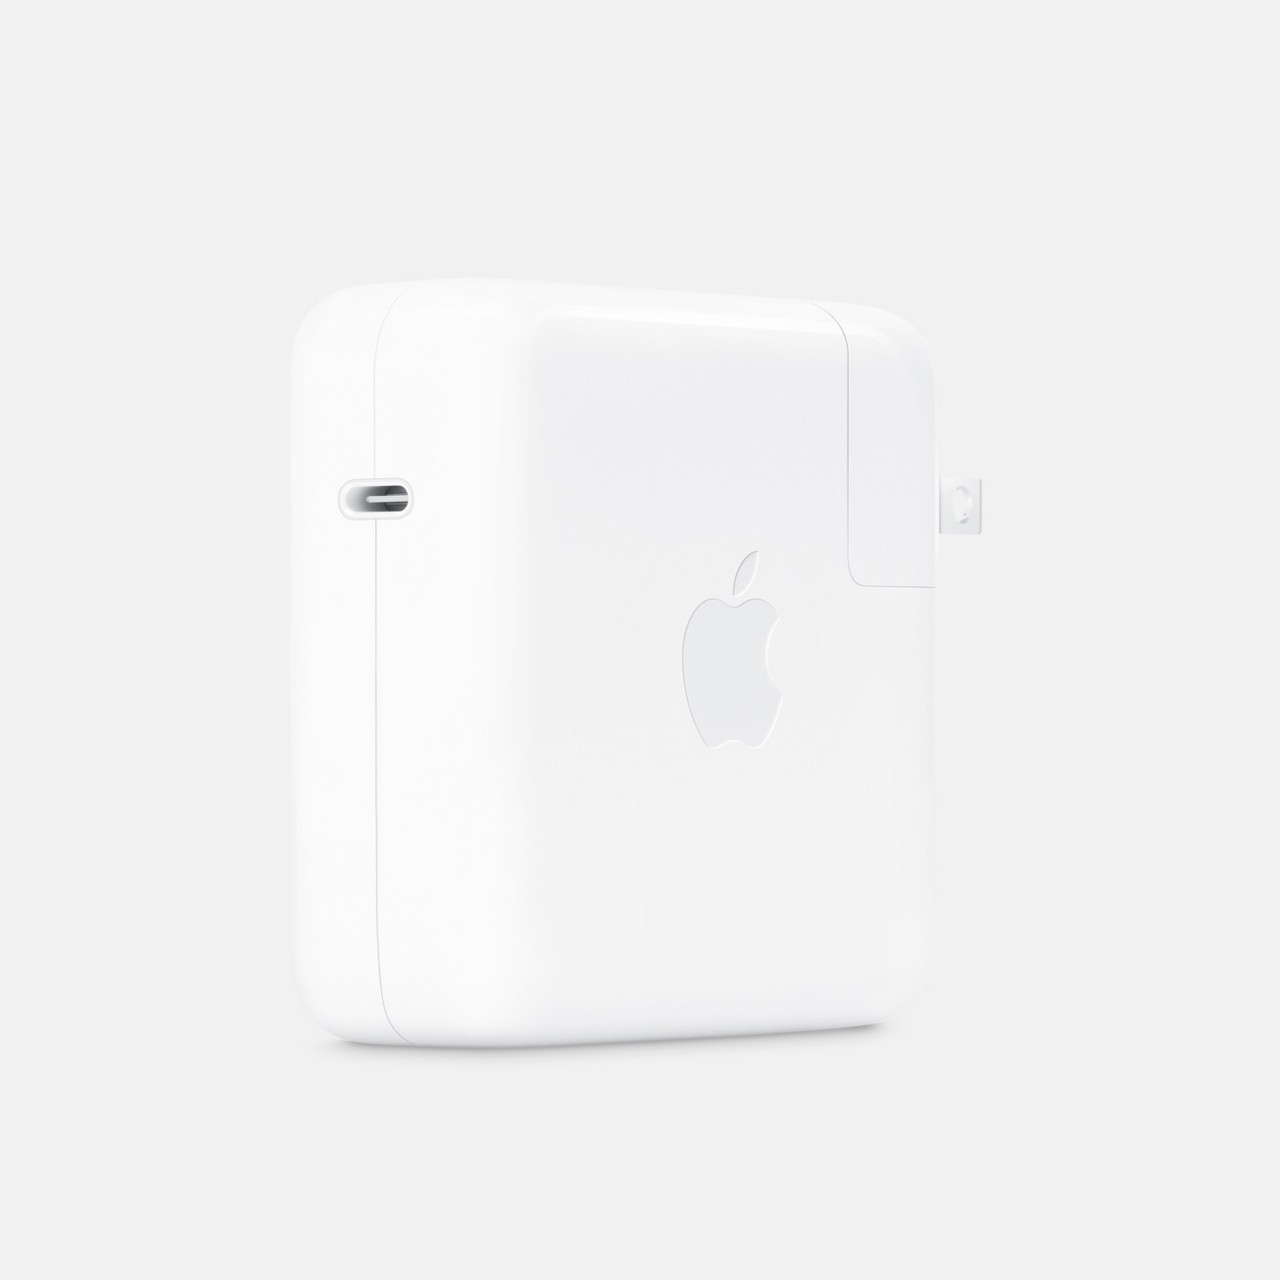 Apple-WWDC22-67W-dual-USB-C-Power-Adapter-220606